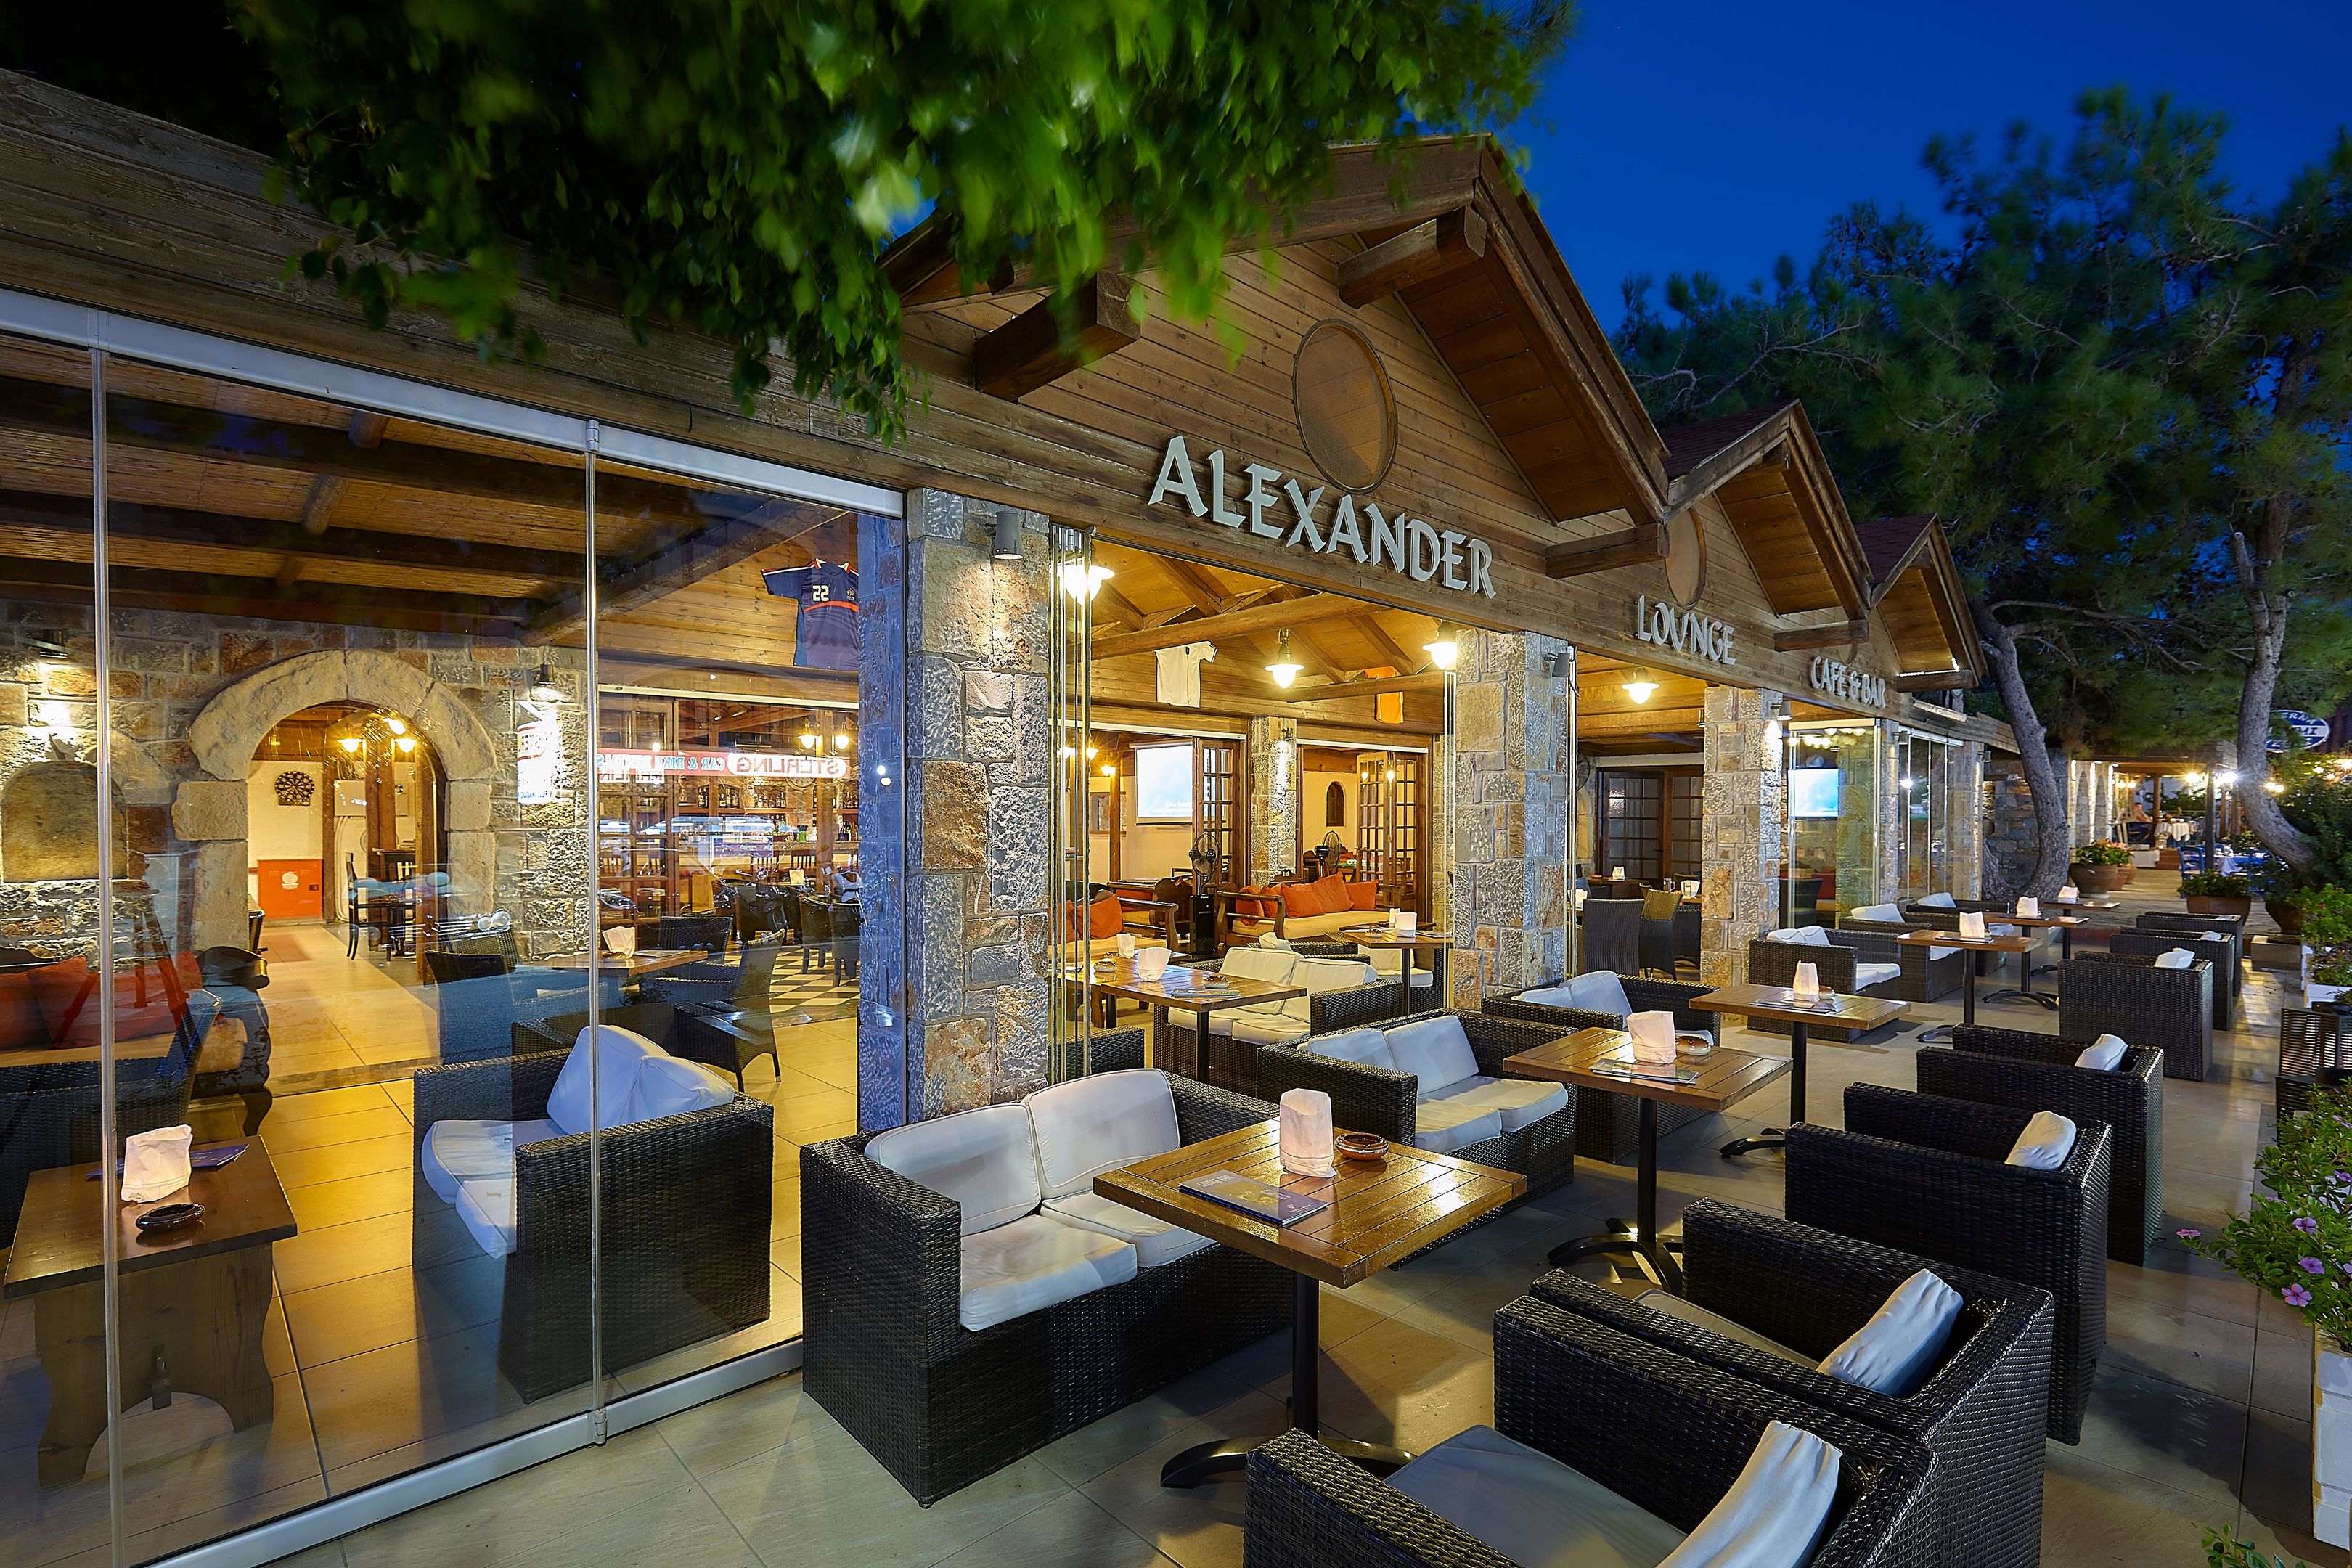 Alexander Beach Hotel & Village